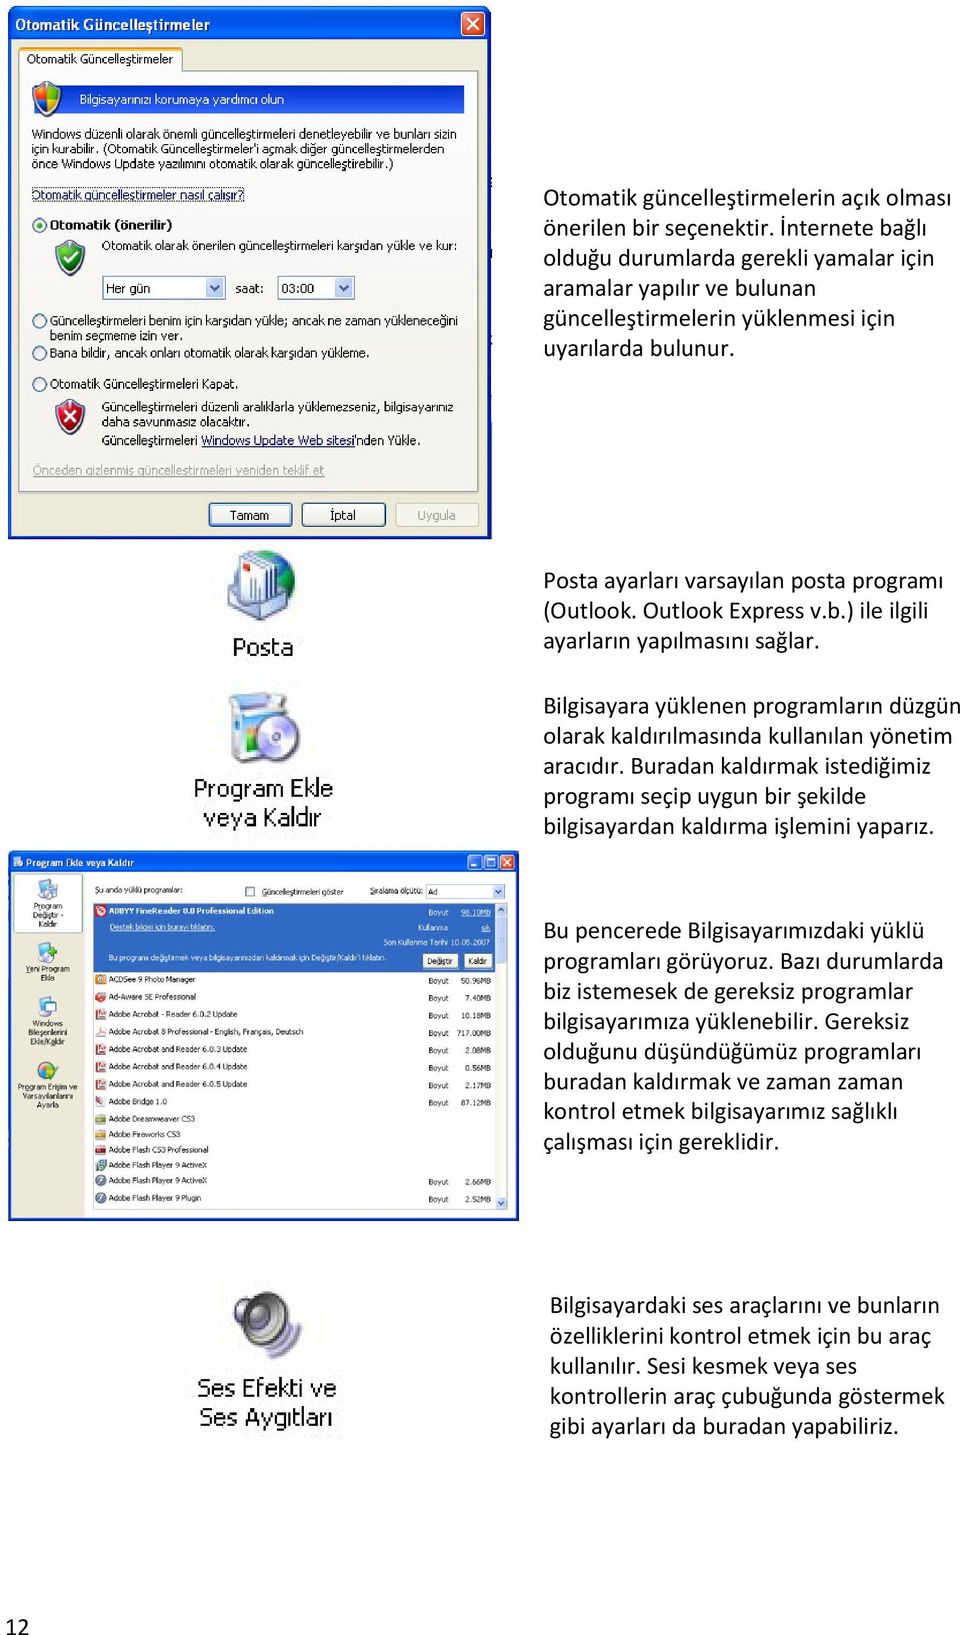 Outlook Express v.b.) ile ilgili ayarların yapılmasını sağlar. Bilgisayara yüklenen programların düzgün olarak kaldırılmasında kullanılan yönetim aracıdır.